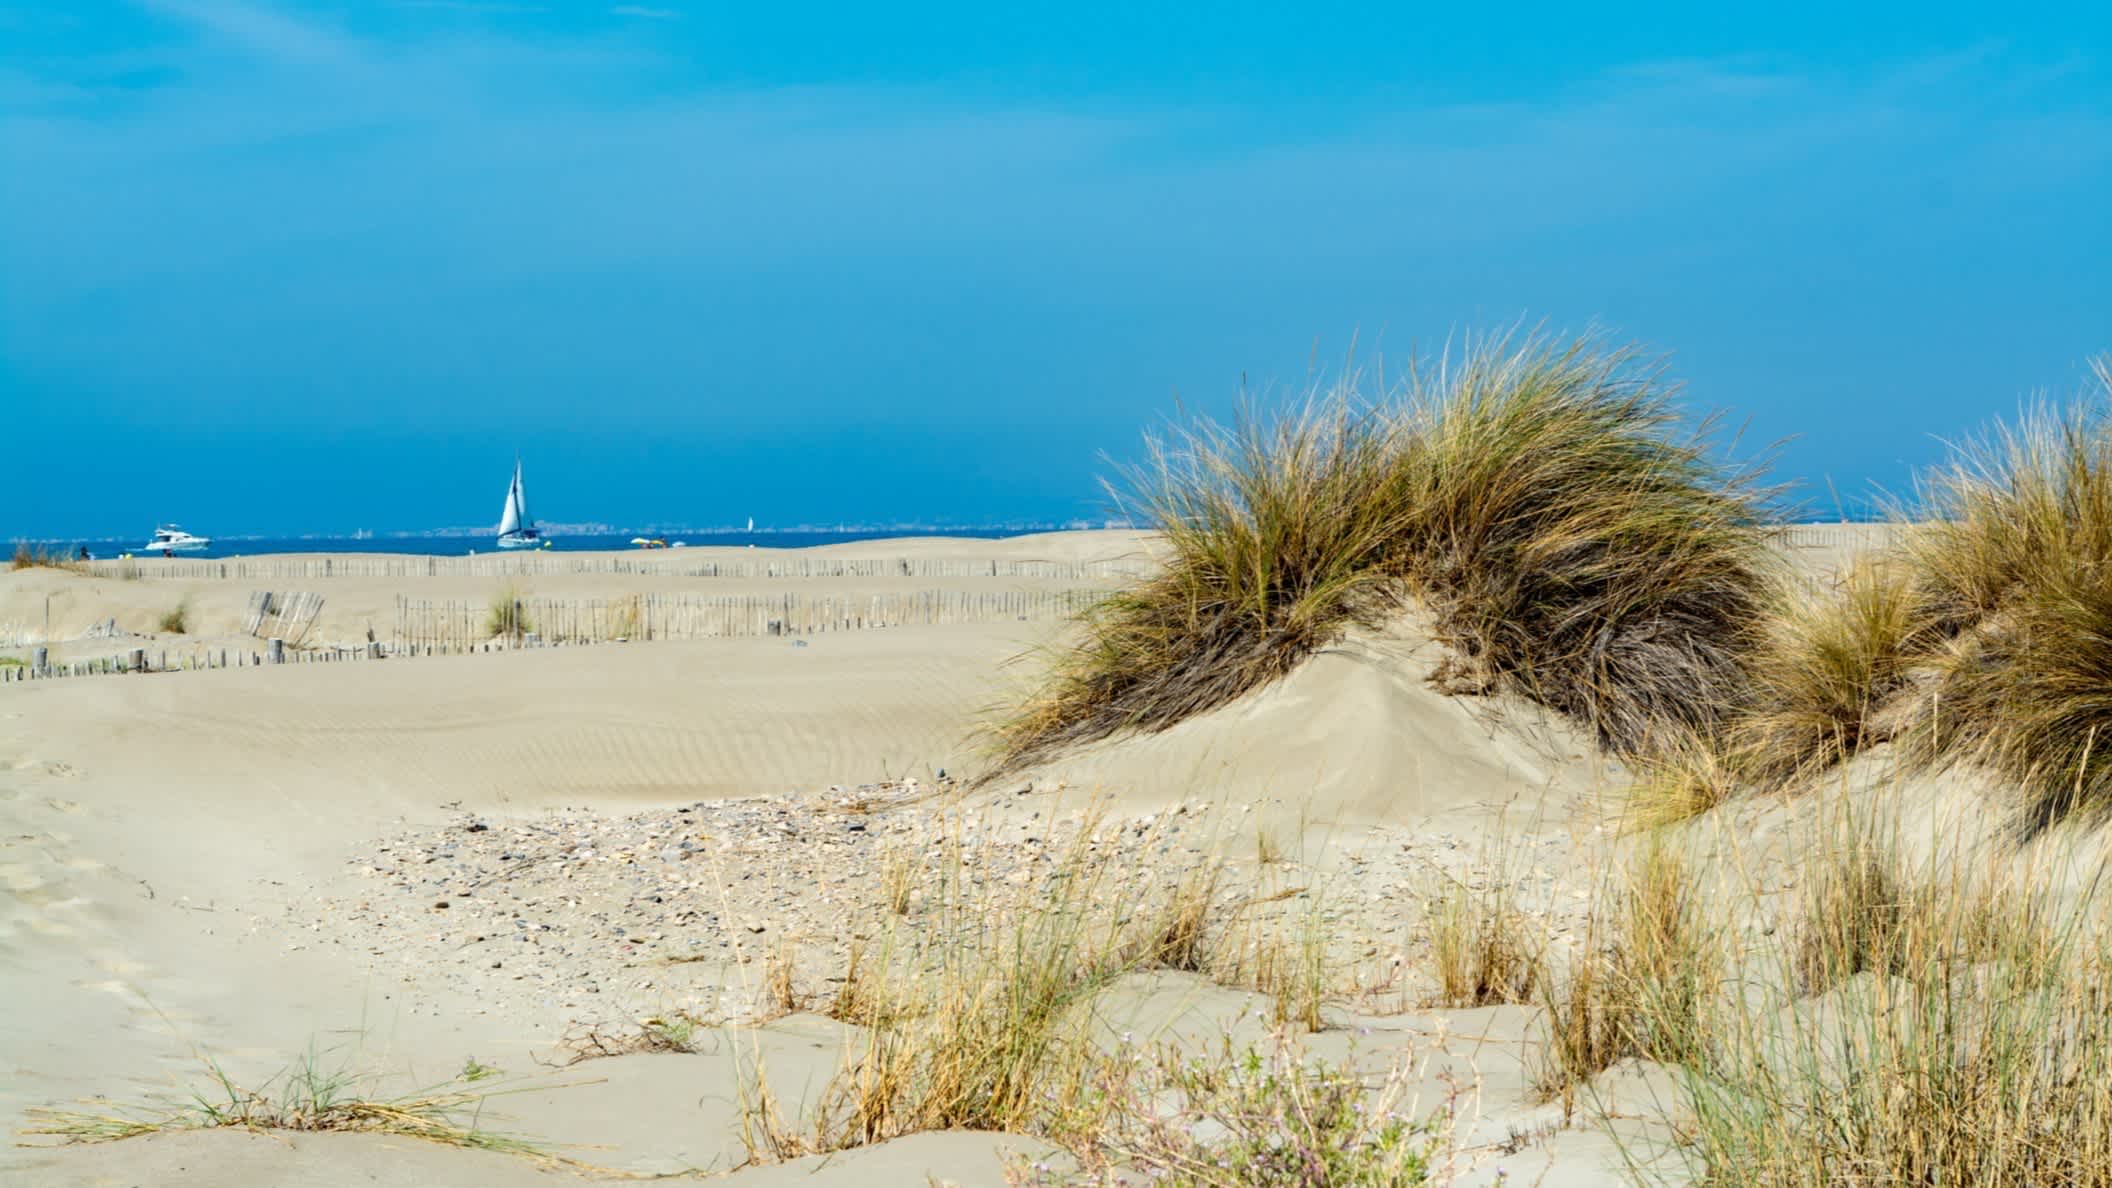 Der weiße Sandstrand Plage de Espiguette in Le Grau du Roi, Frankreich mit Aussicht auf die Dünen und das Meer am Horizont mit einem Segelboot.
